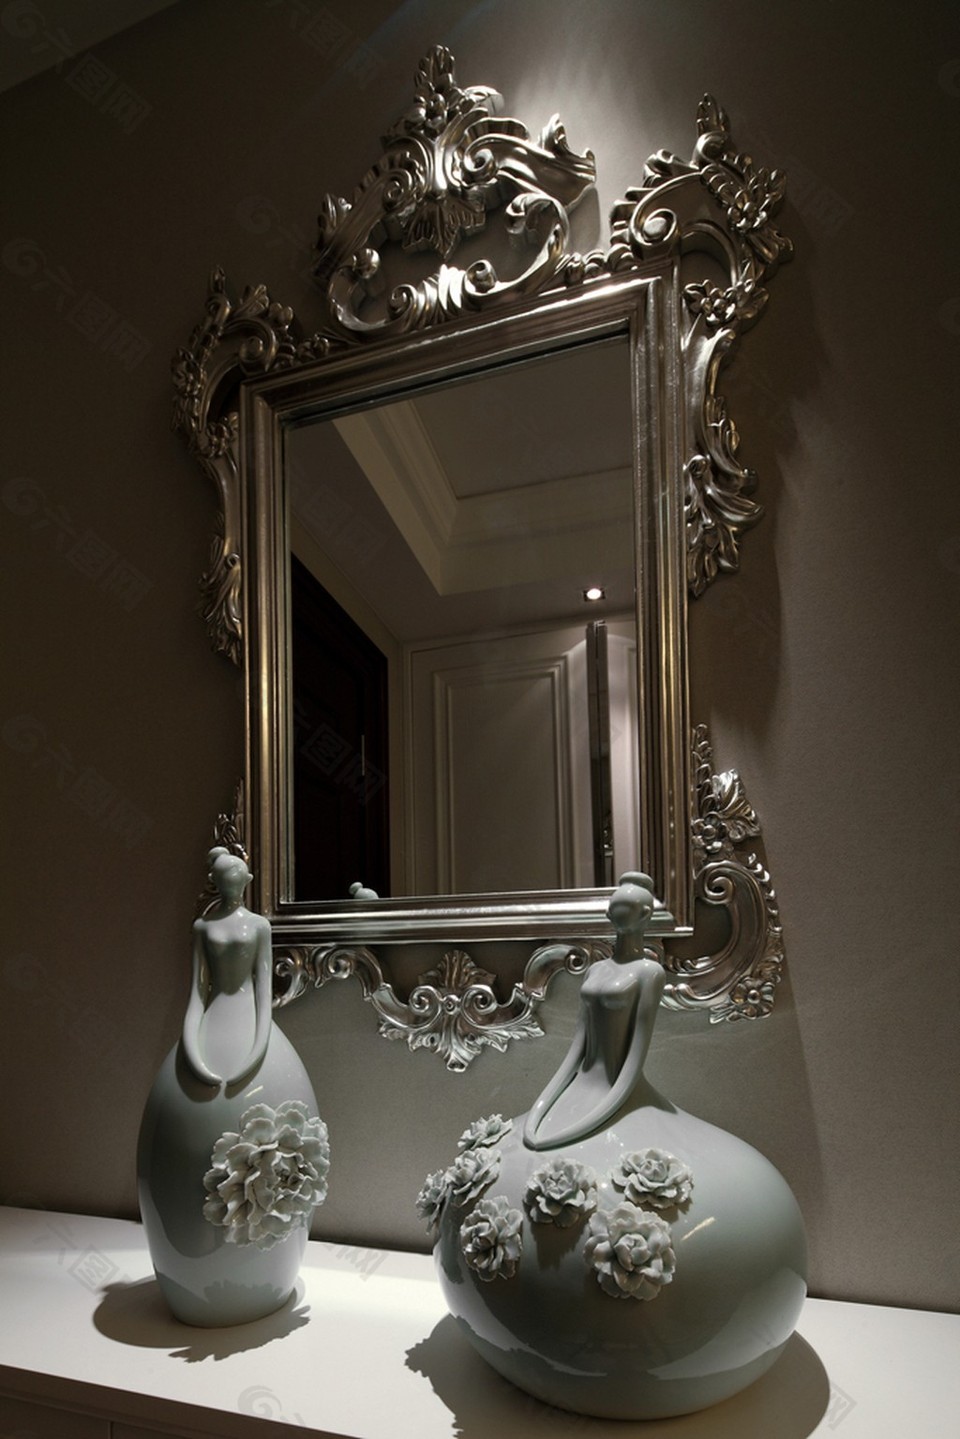 欧式室内摆件镜子设计图